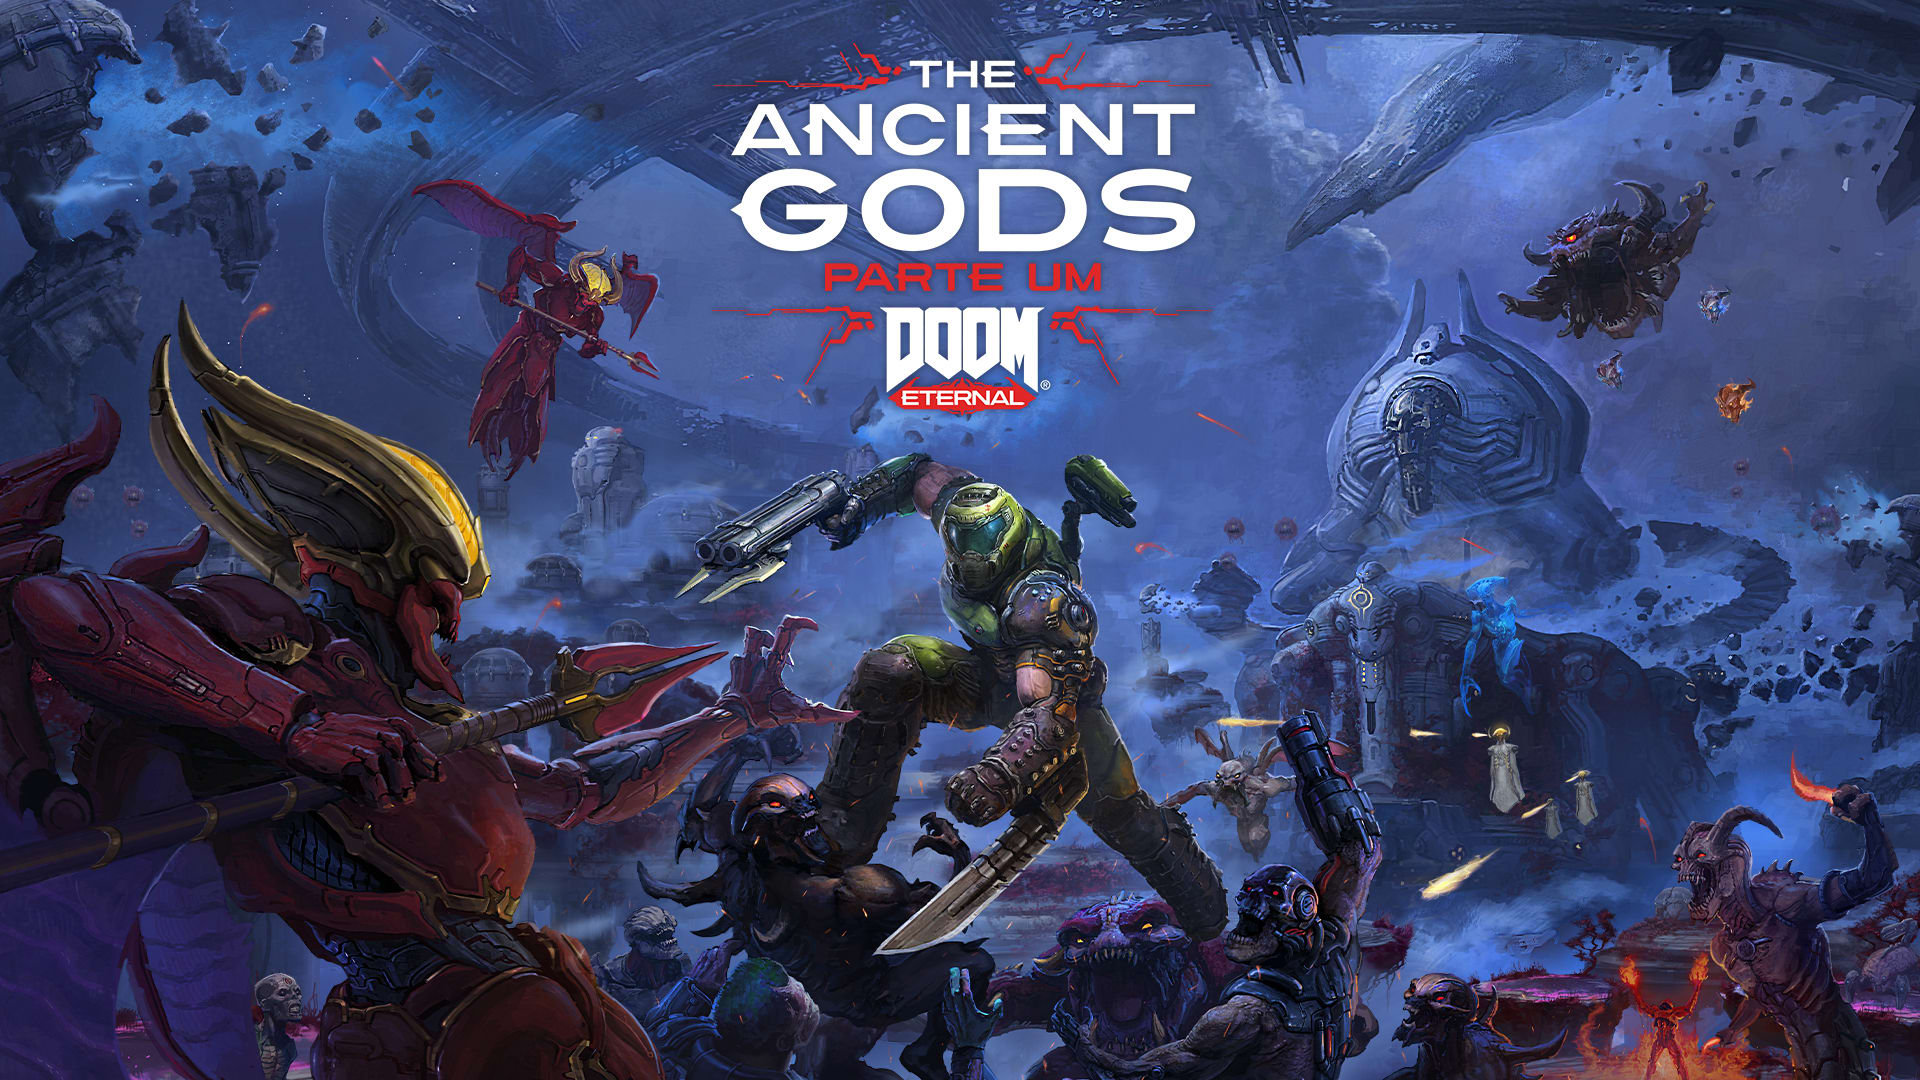 DOOM Eternal: The Ancient Gods – Parte Um